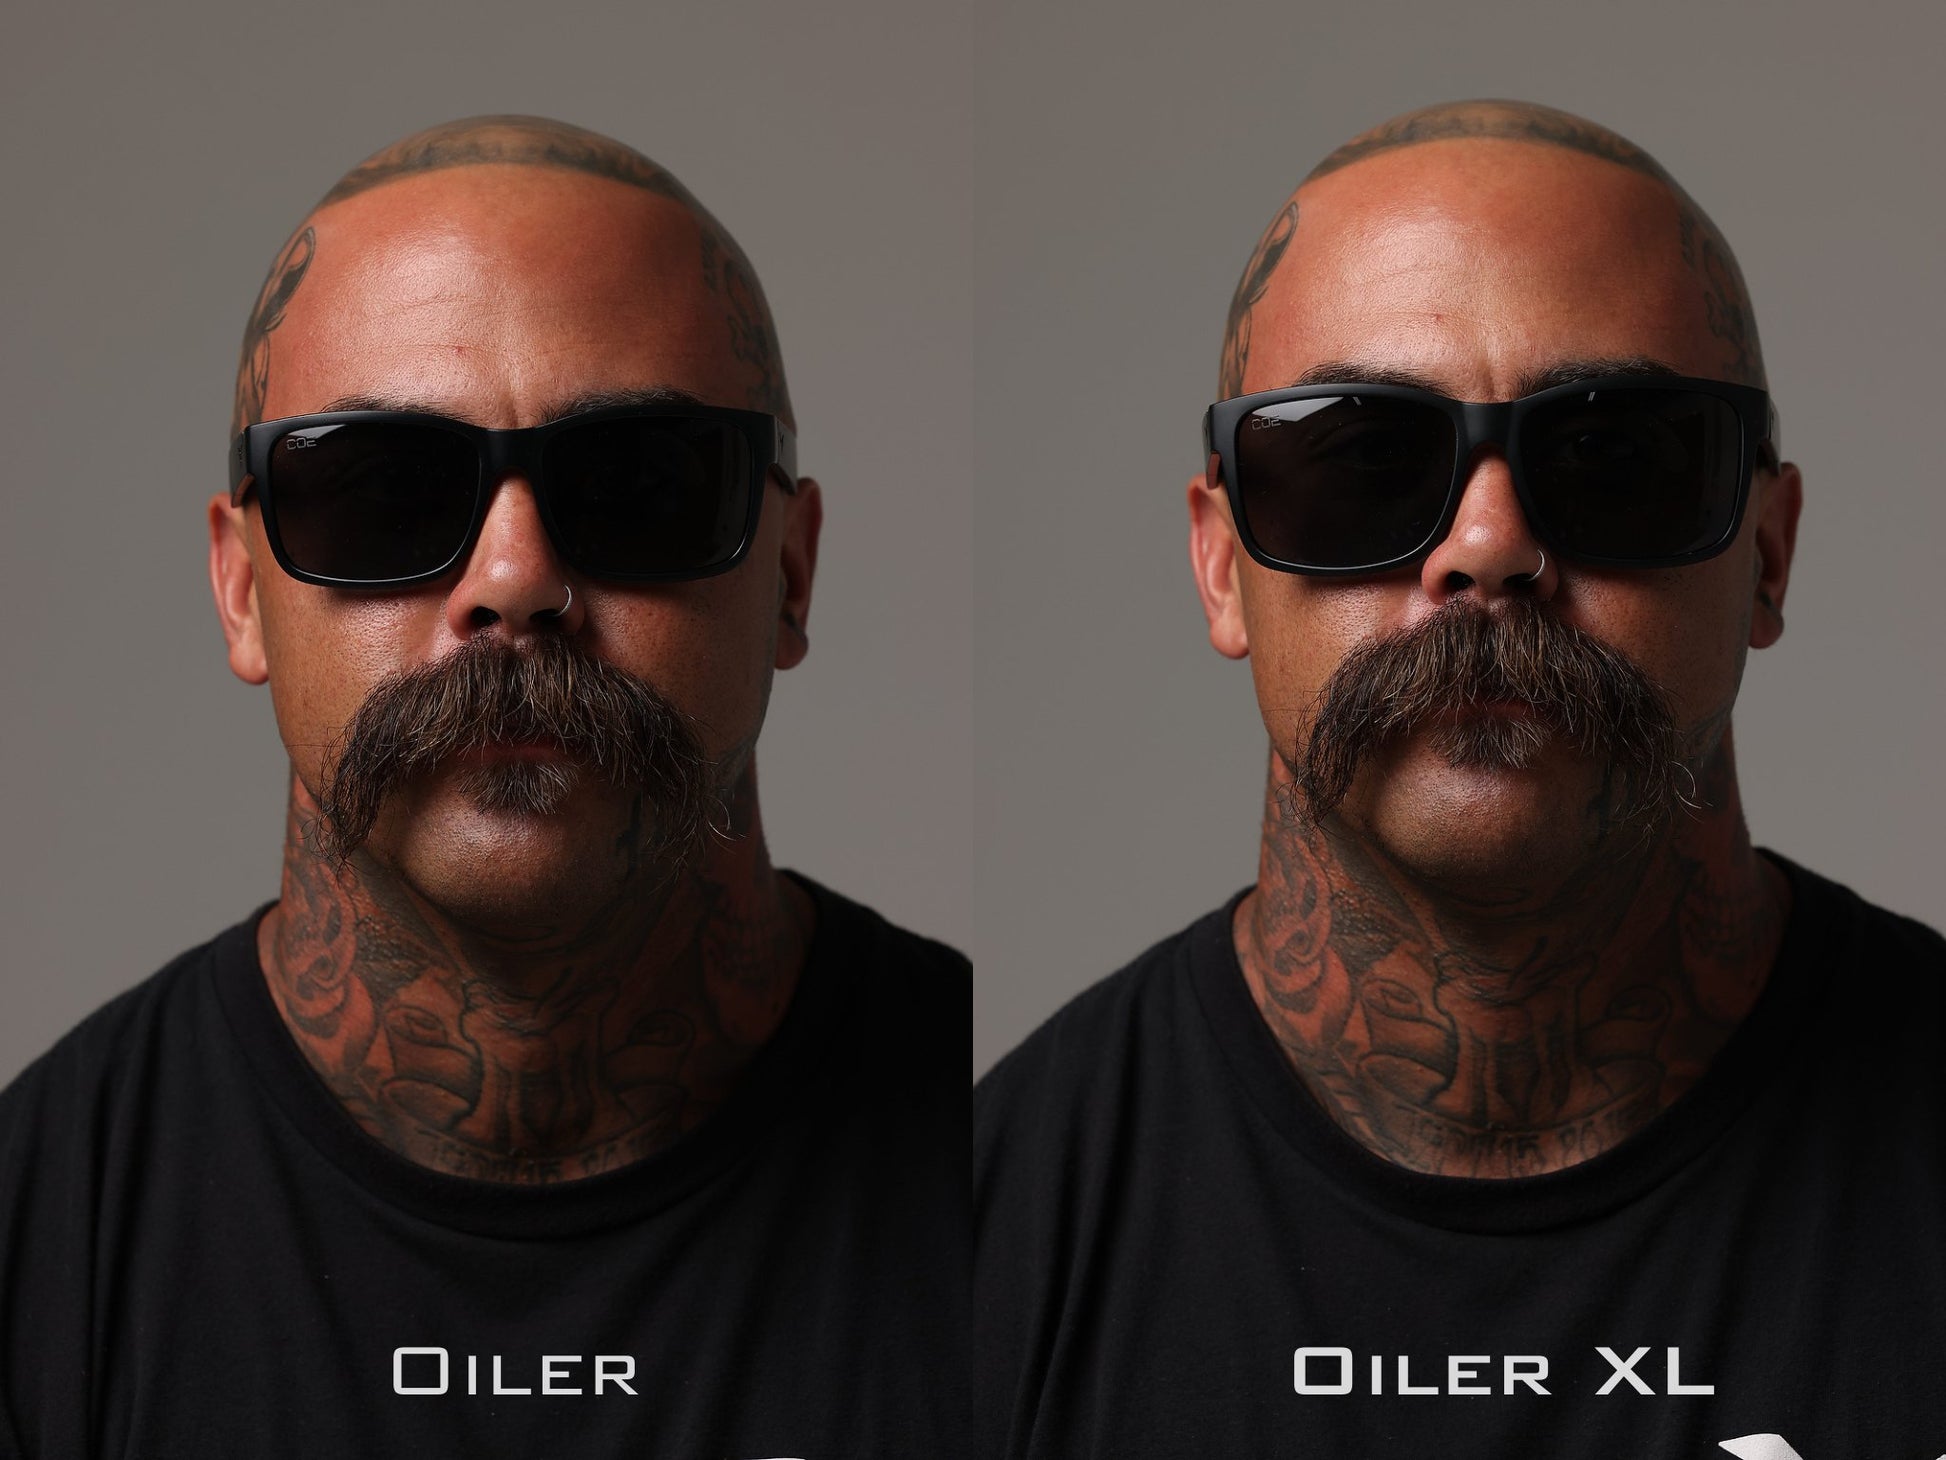 Oiler XL Z87 Matte Black Rx Lenses - Coeyewear